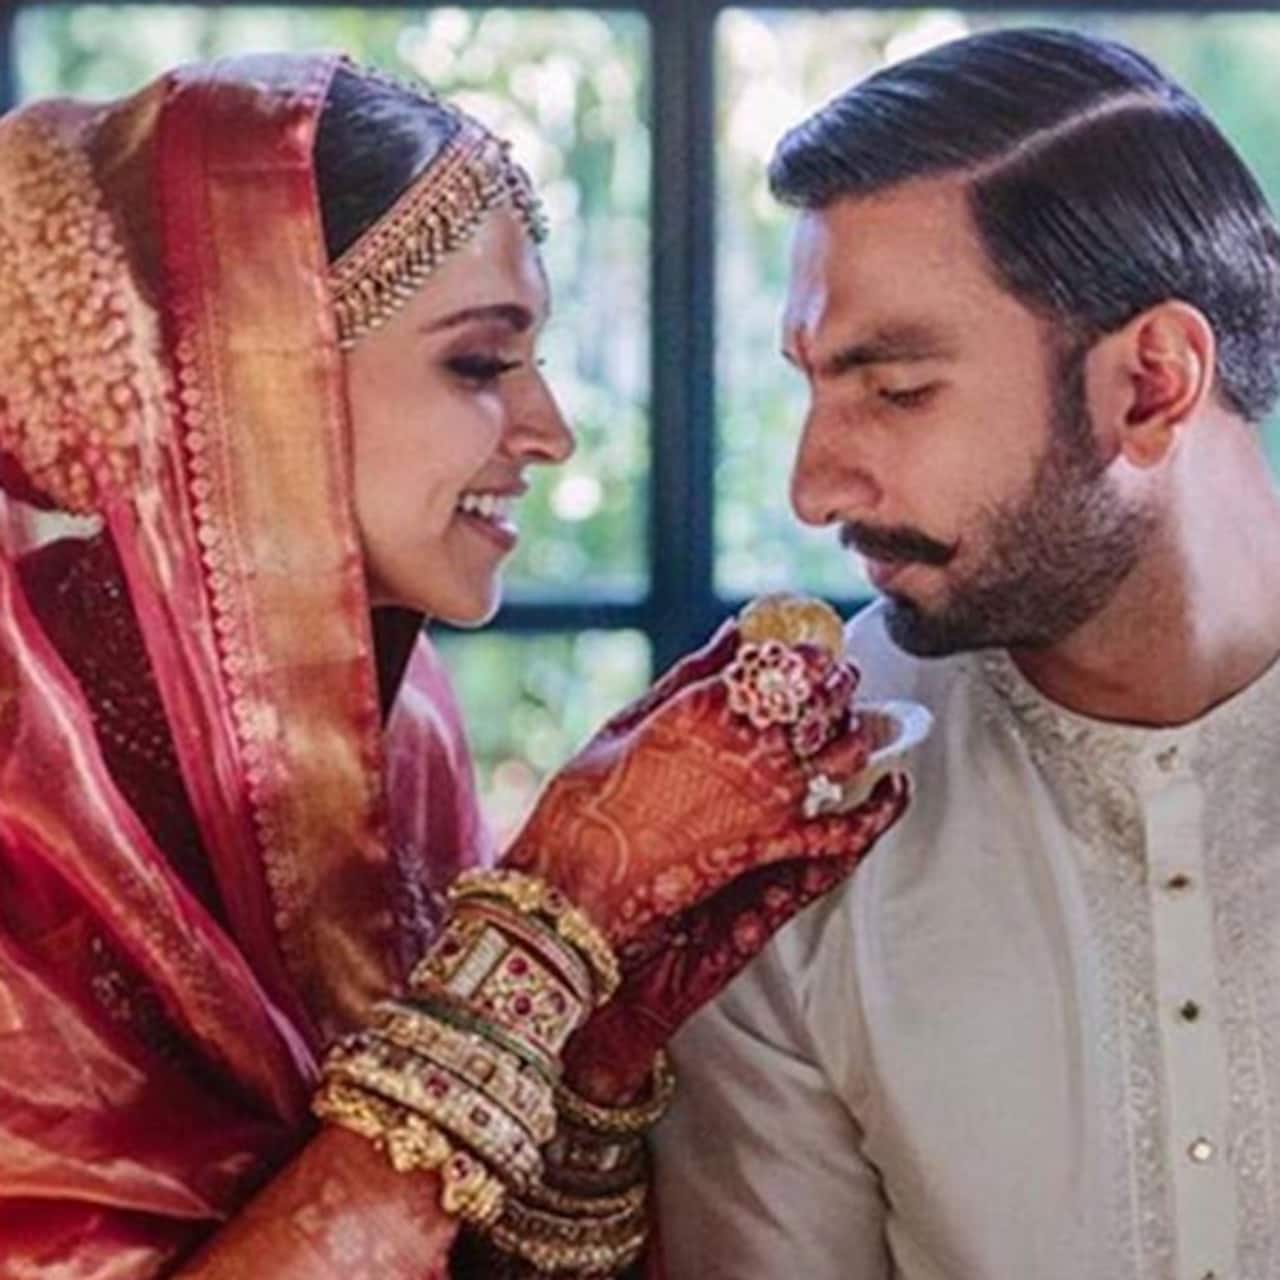 Deepika Padukone and Ranveer Singh's wedding was a dreamy affair